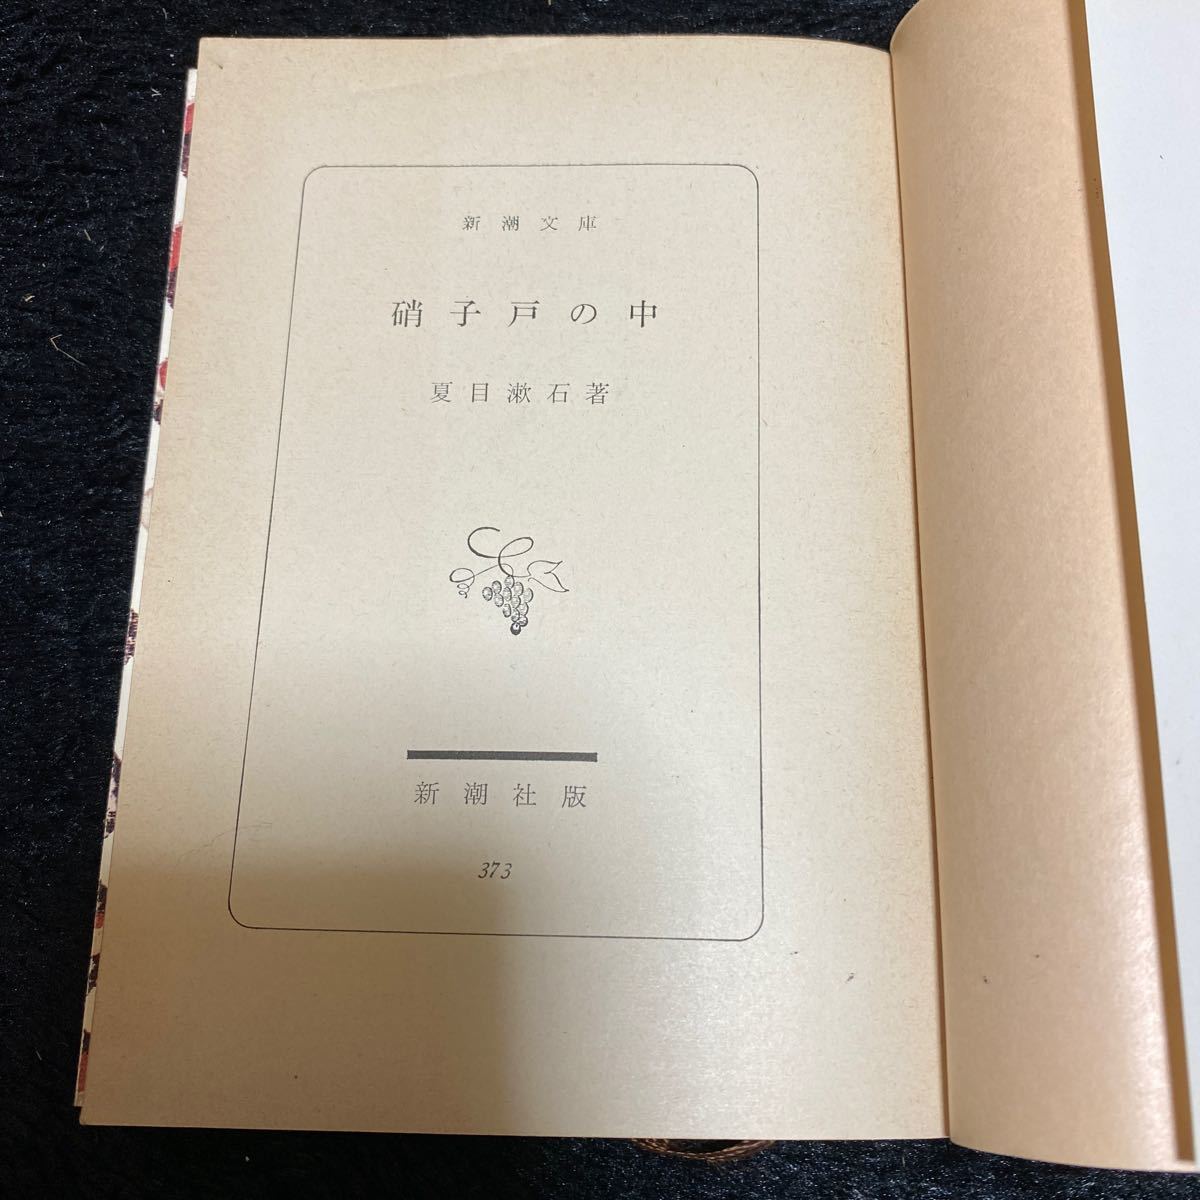 新潮文庫『硝子戸の中』夏目漱石